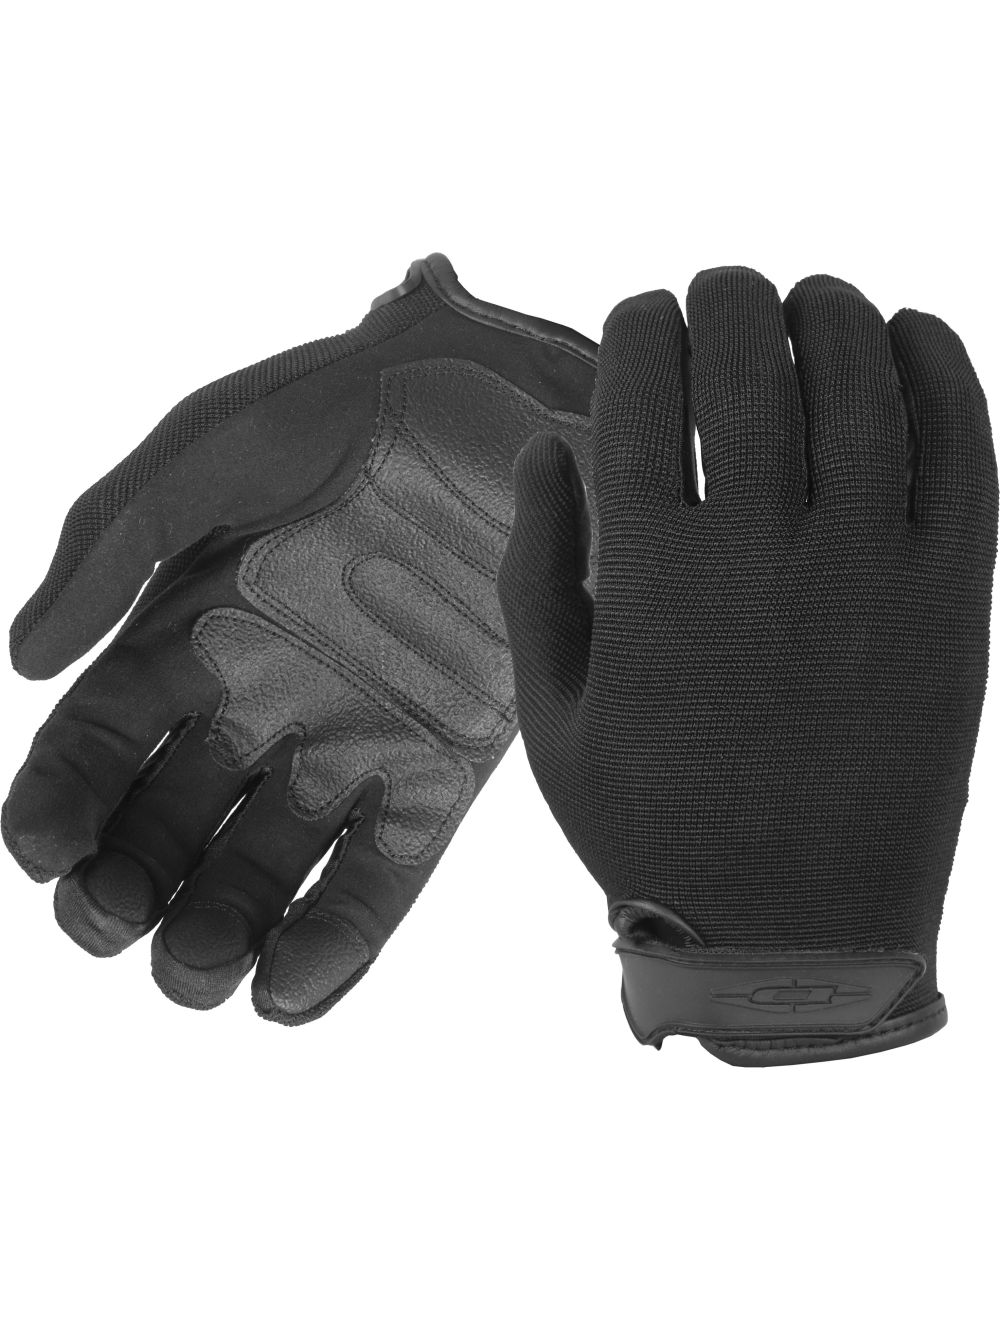 Nexstar I Lightweight Gloves